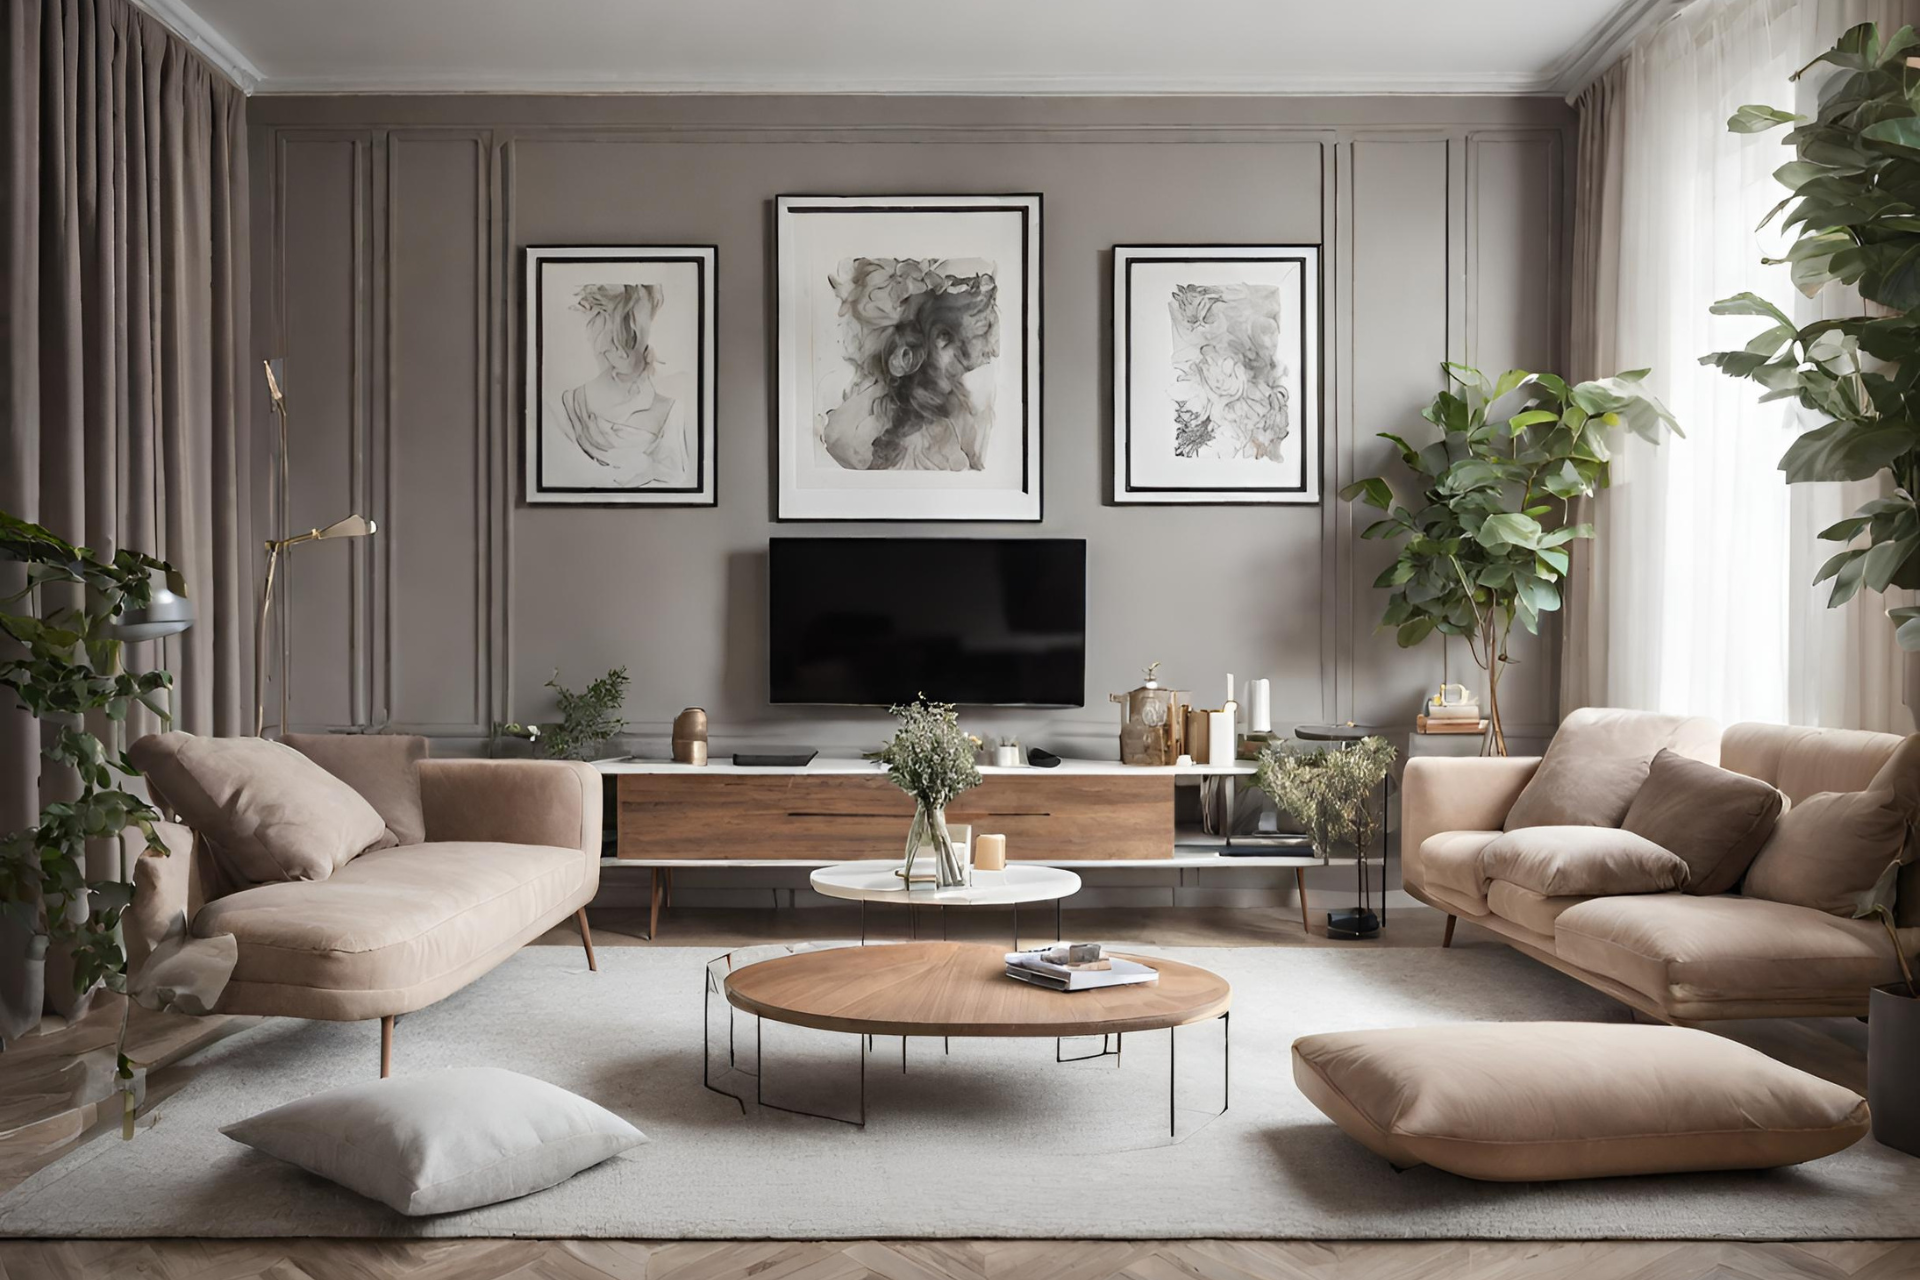 Stilvolle Bilder im Wohnzimmer Dein Leitfaden für eine atemberaubende Inneneinrichtung